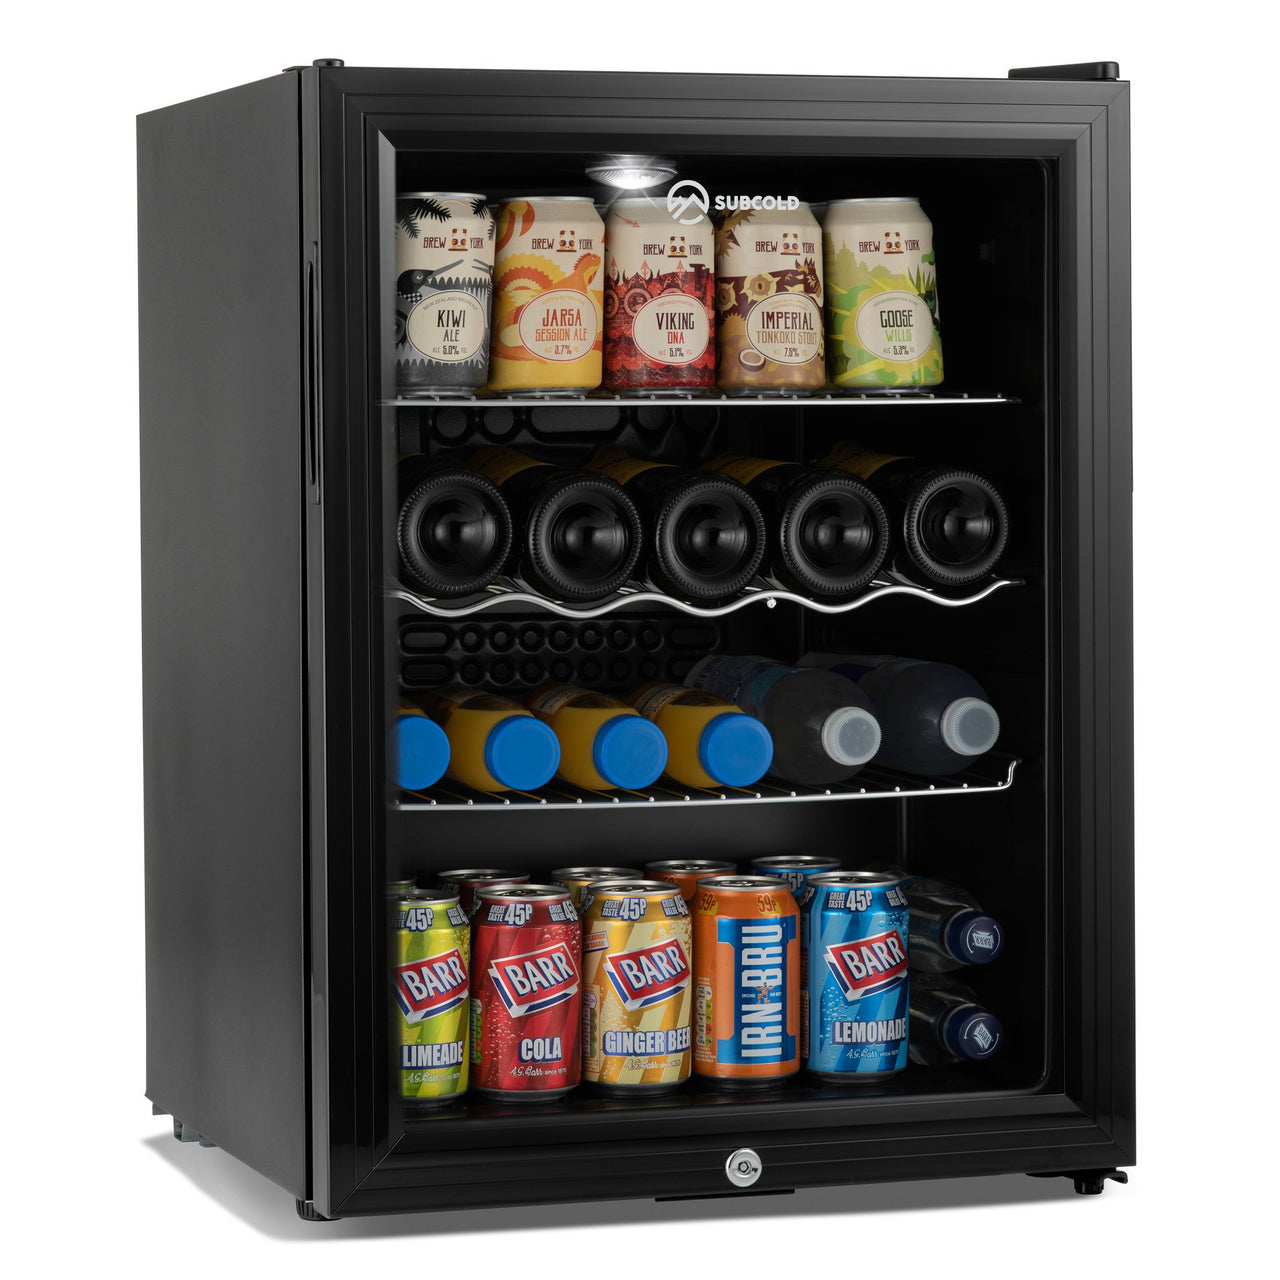 Subcold Super 65 litre beer drinks fridge black